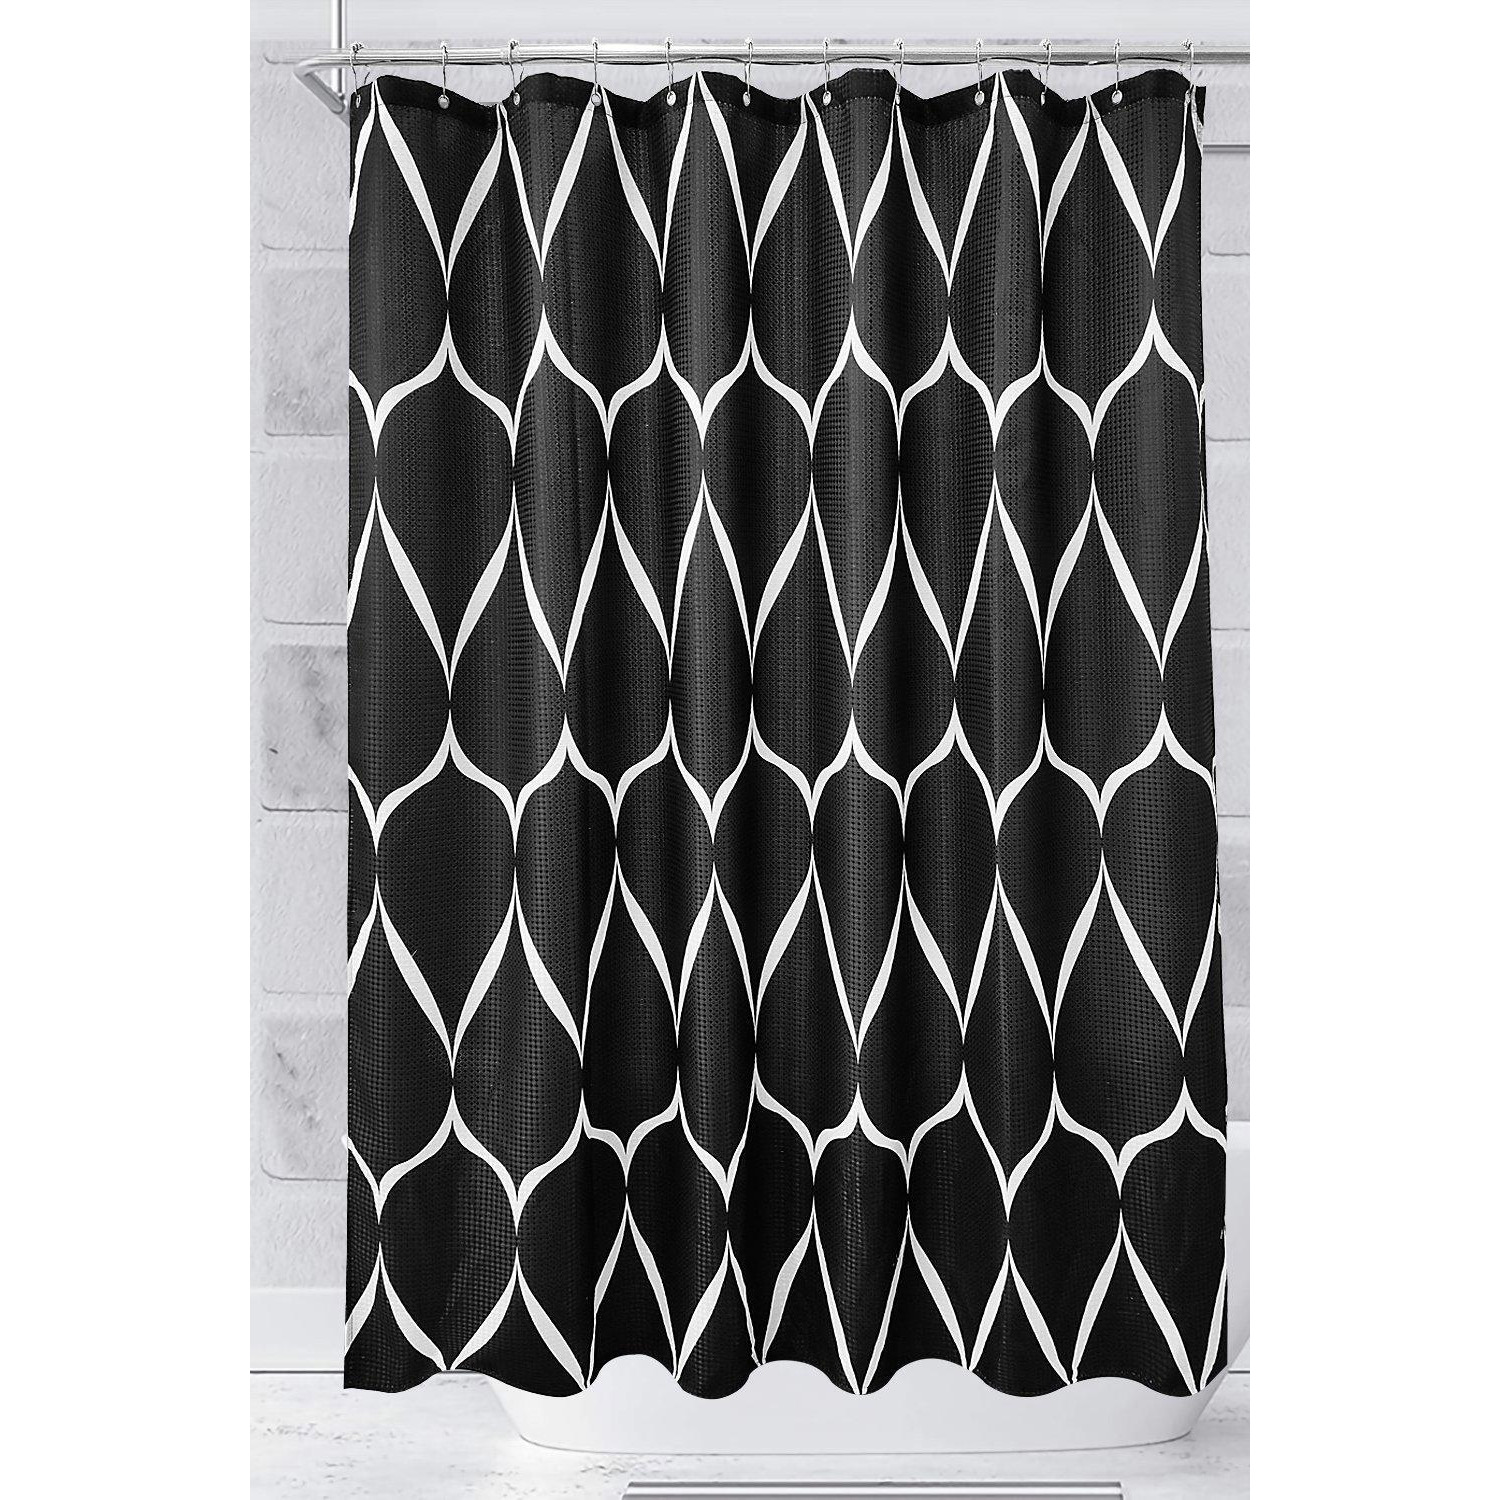 Lattice Design Shower Curtain, Black - 180cm x 180cm - image 1